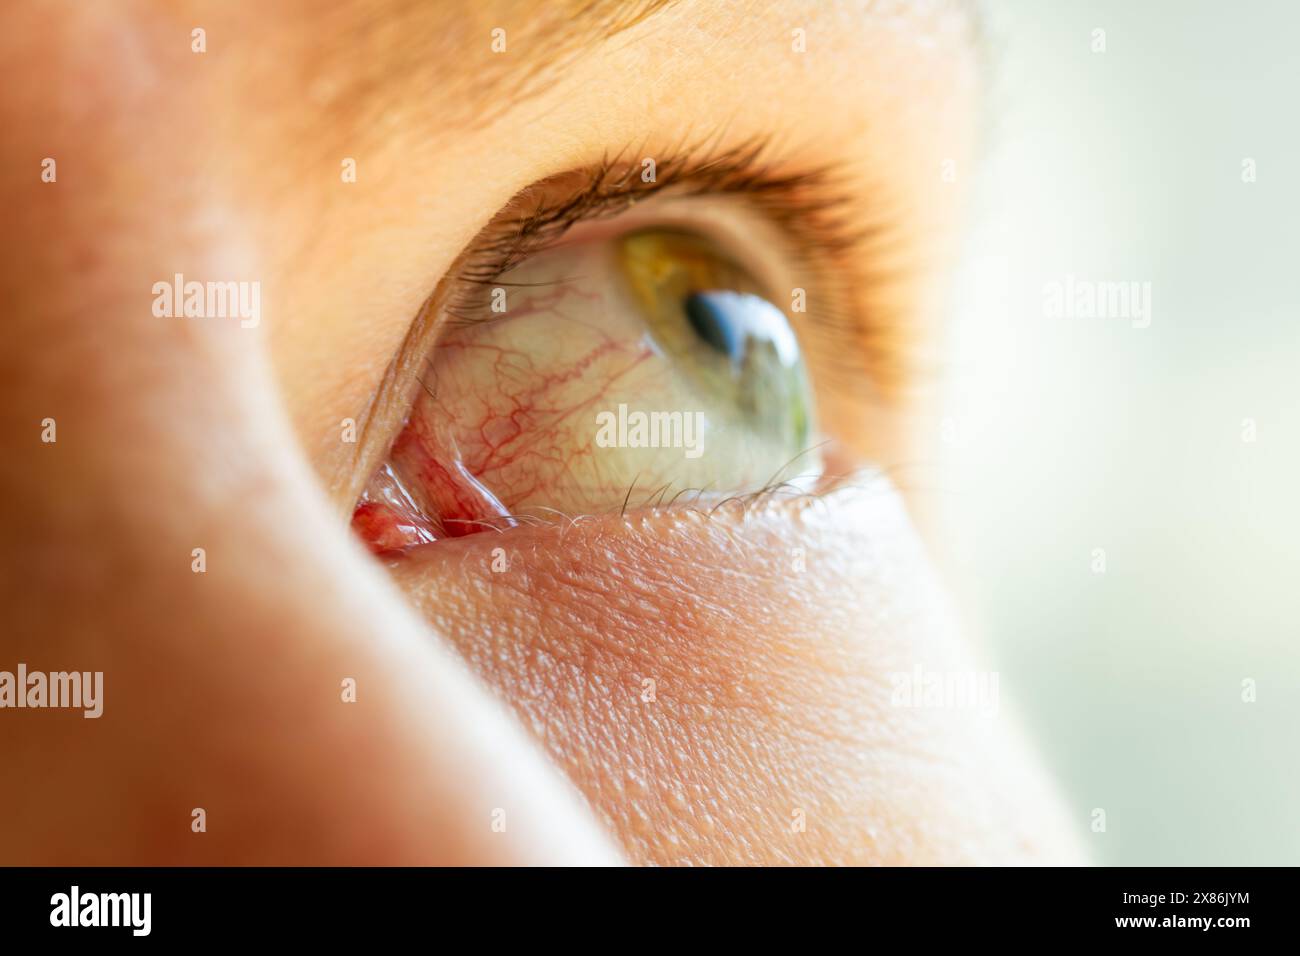 Menschliches Auge Nahaufnahme mit schönem Himmel und bauender Reflexion in der Pupille, Medizin-Vision-Konzept, Abstraktion Stockfoto